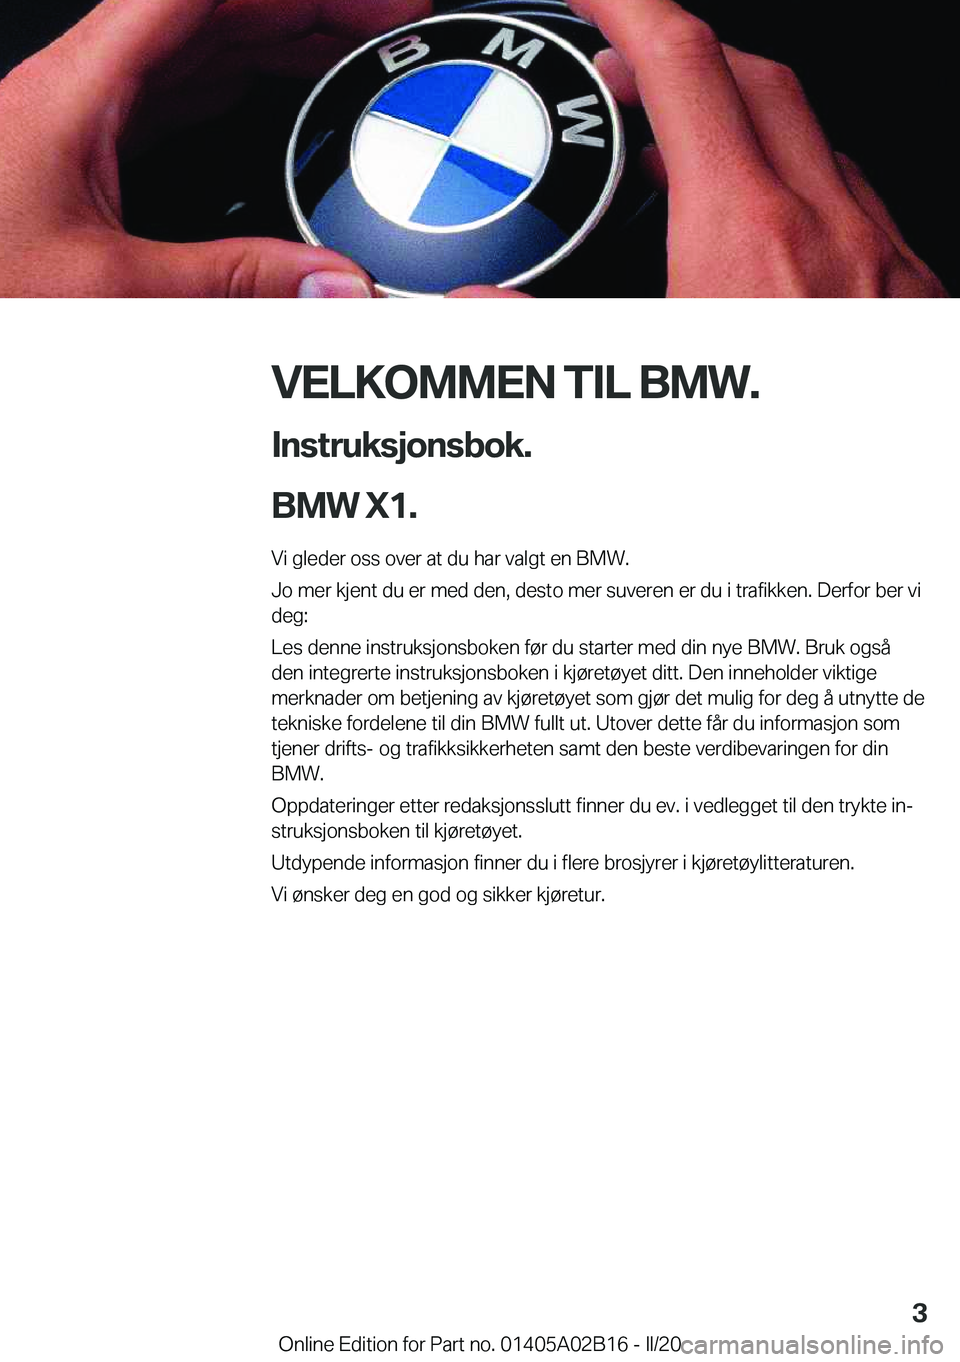 BMW X1 2020  InstruksjonsbØker (in Norwegian) �V�E�L�K�O�M�M�E�N��T�I�L��B�M�W�.�I�n�s�t�r�u�k�s�j�o�n�s�b�o�k�.
�B�M�W��X�1�.
�V�i��g�l�e�d�e�r��o�s�s��o�v�e�r��a�t��d�u��h�a�r��v�a�l�g�t��e�n��B�M�W�.
�J�o��m�e�r��k�j�e�n�t��d�u�